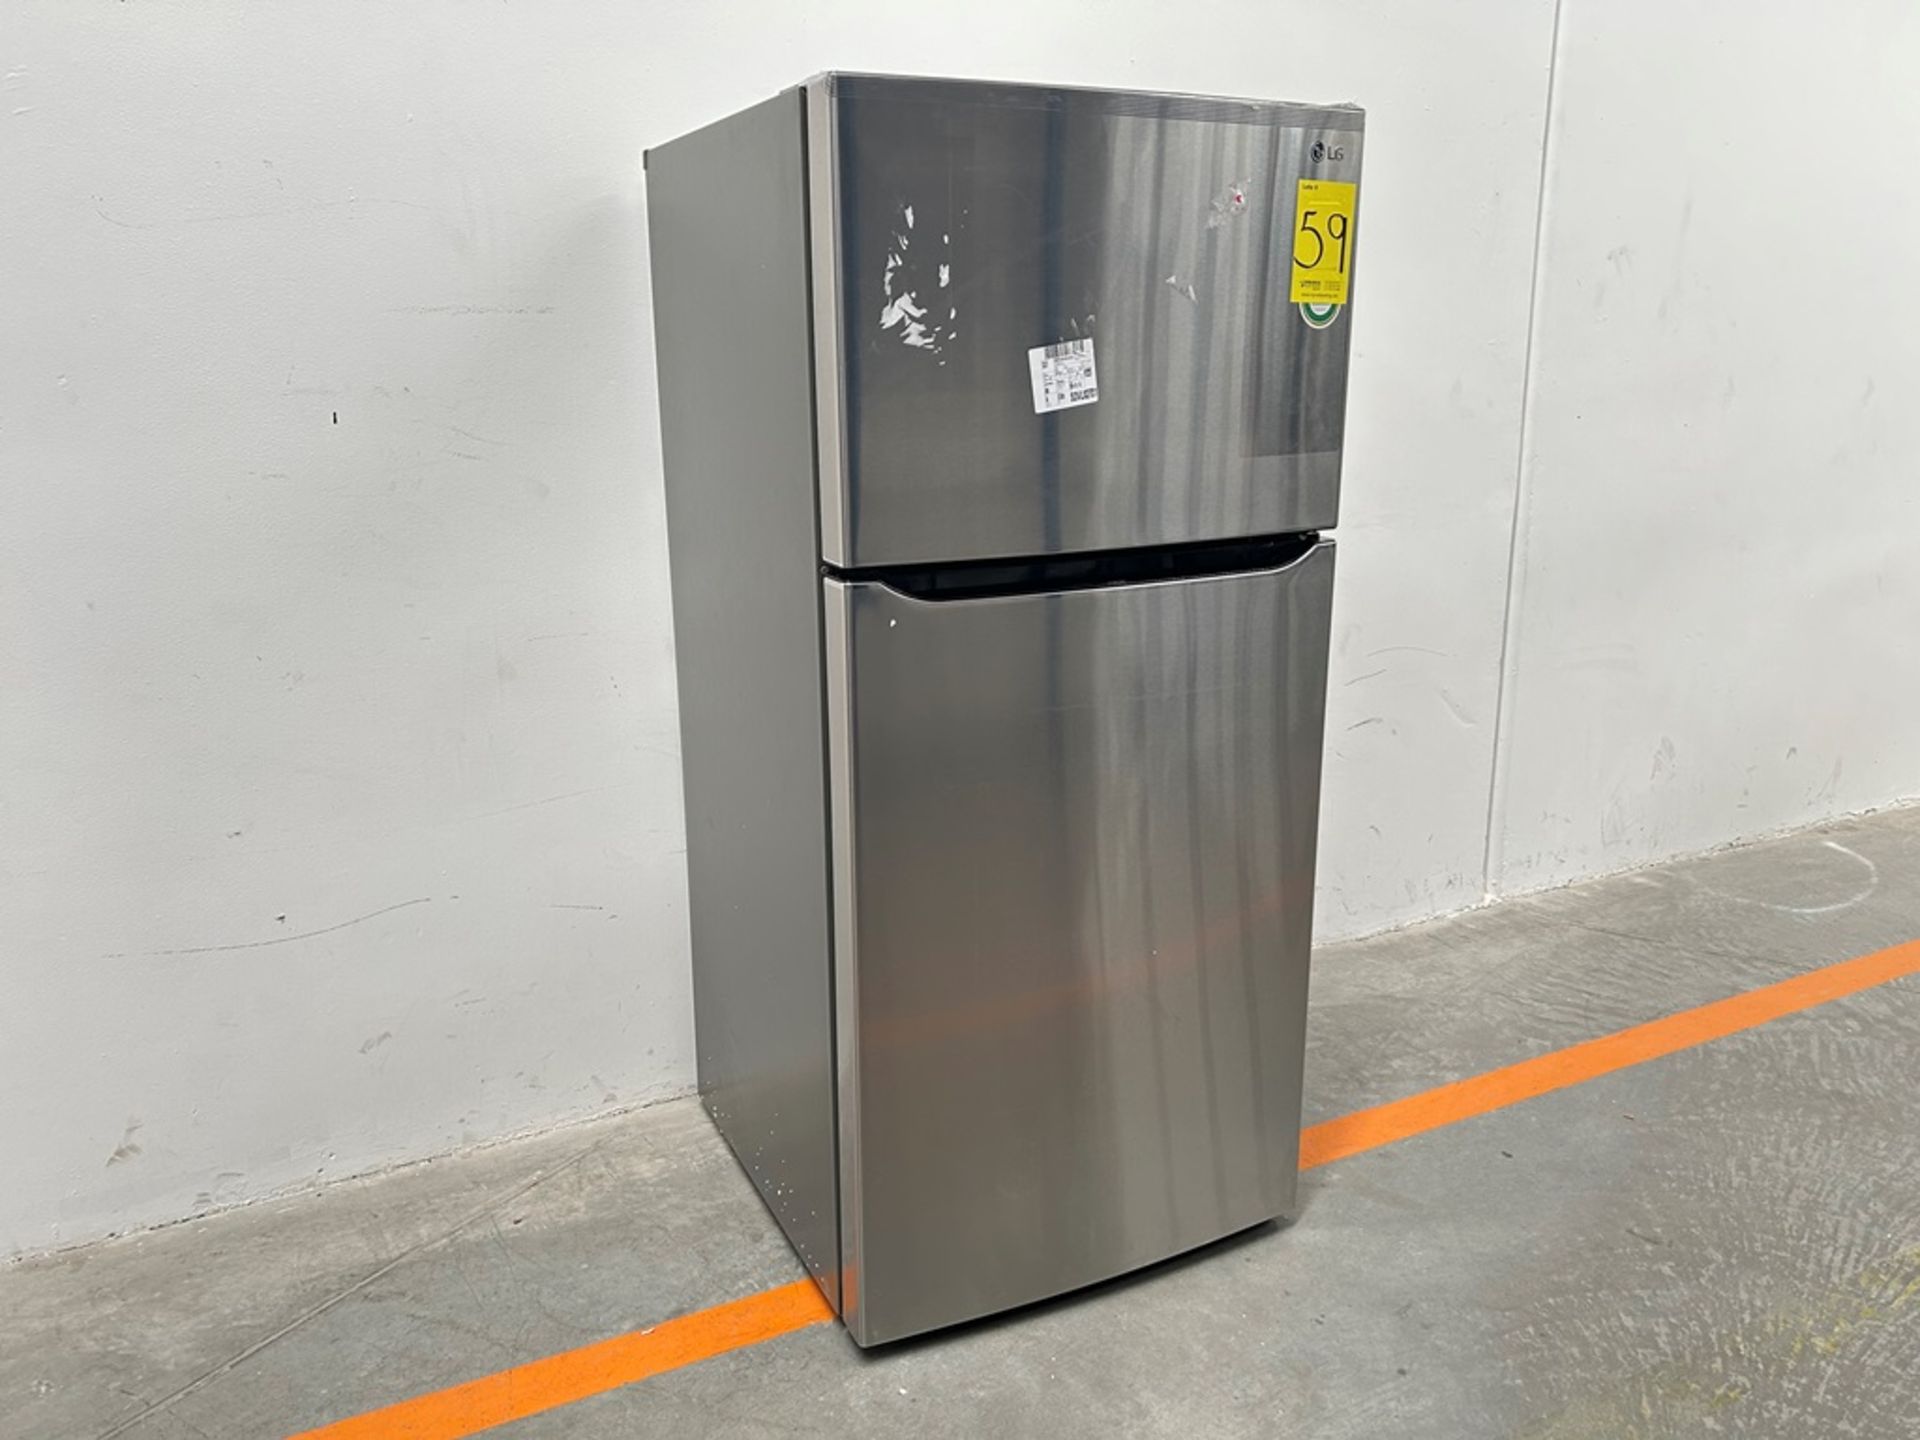 (NUEVO) Refrigerador Marca LG, Modelo LT57BPSX, Serie 1U863, Color GRIS - Image 3 of 11